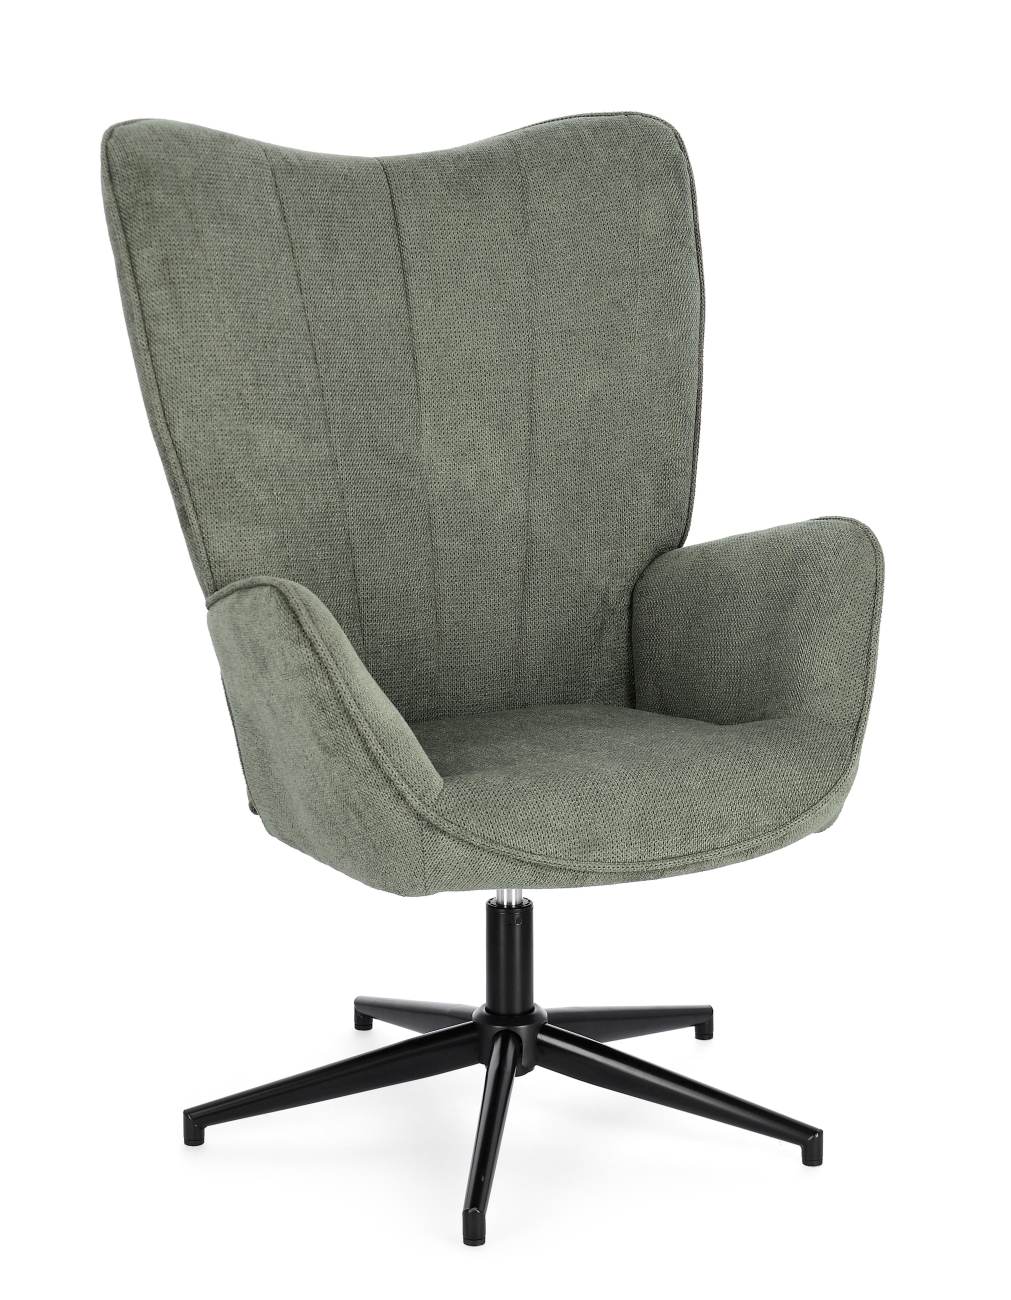 Der Drehsessel Inas überzeugt mit seinem modernen Stil. Gefertigt wurde er aus Stoff, welcher einen grünen Farbton besitzt. Das Gestell ist aus Metall und hat eine schwarze Farbe. Der Sessel besitzt eine Sitzhöhe von 50 cm.